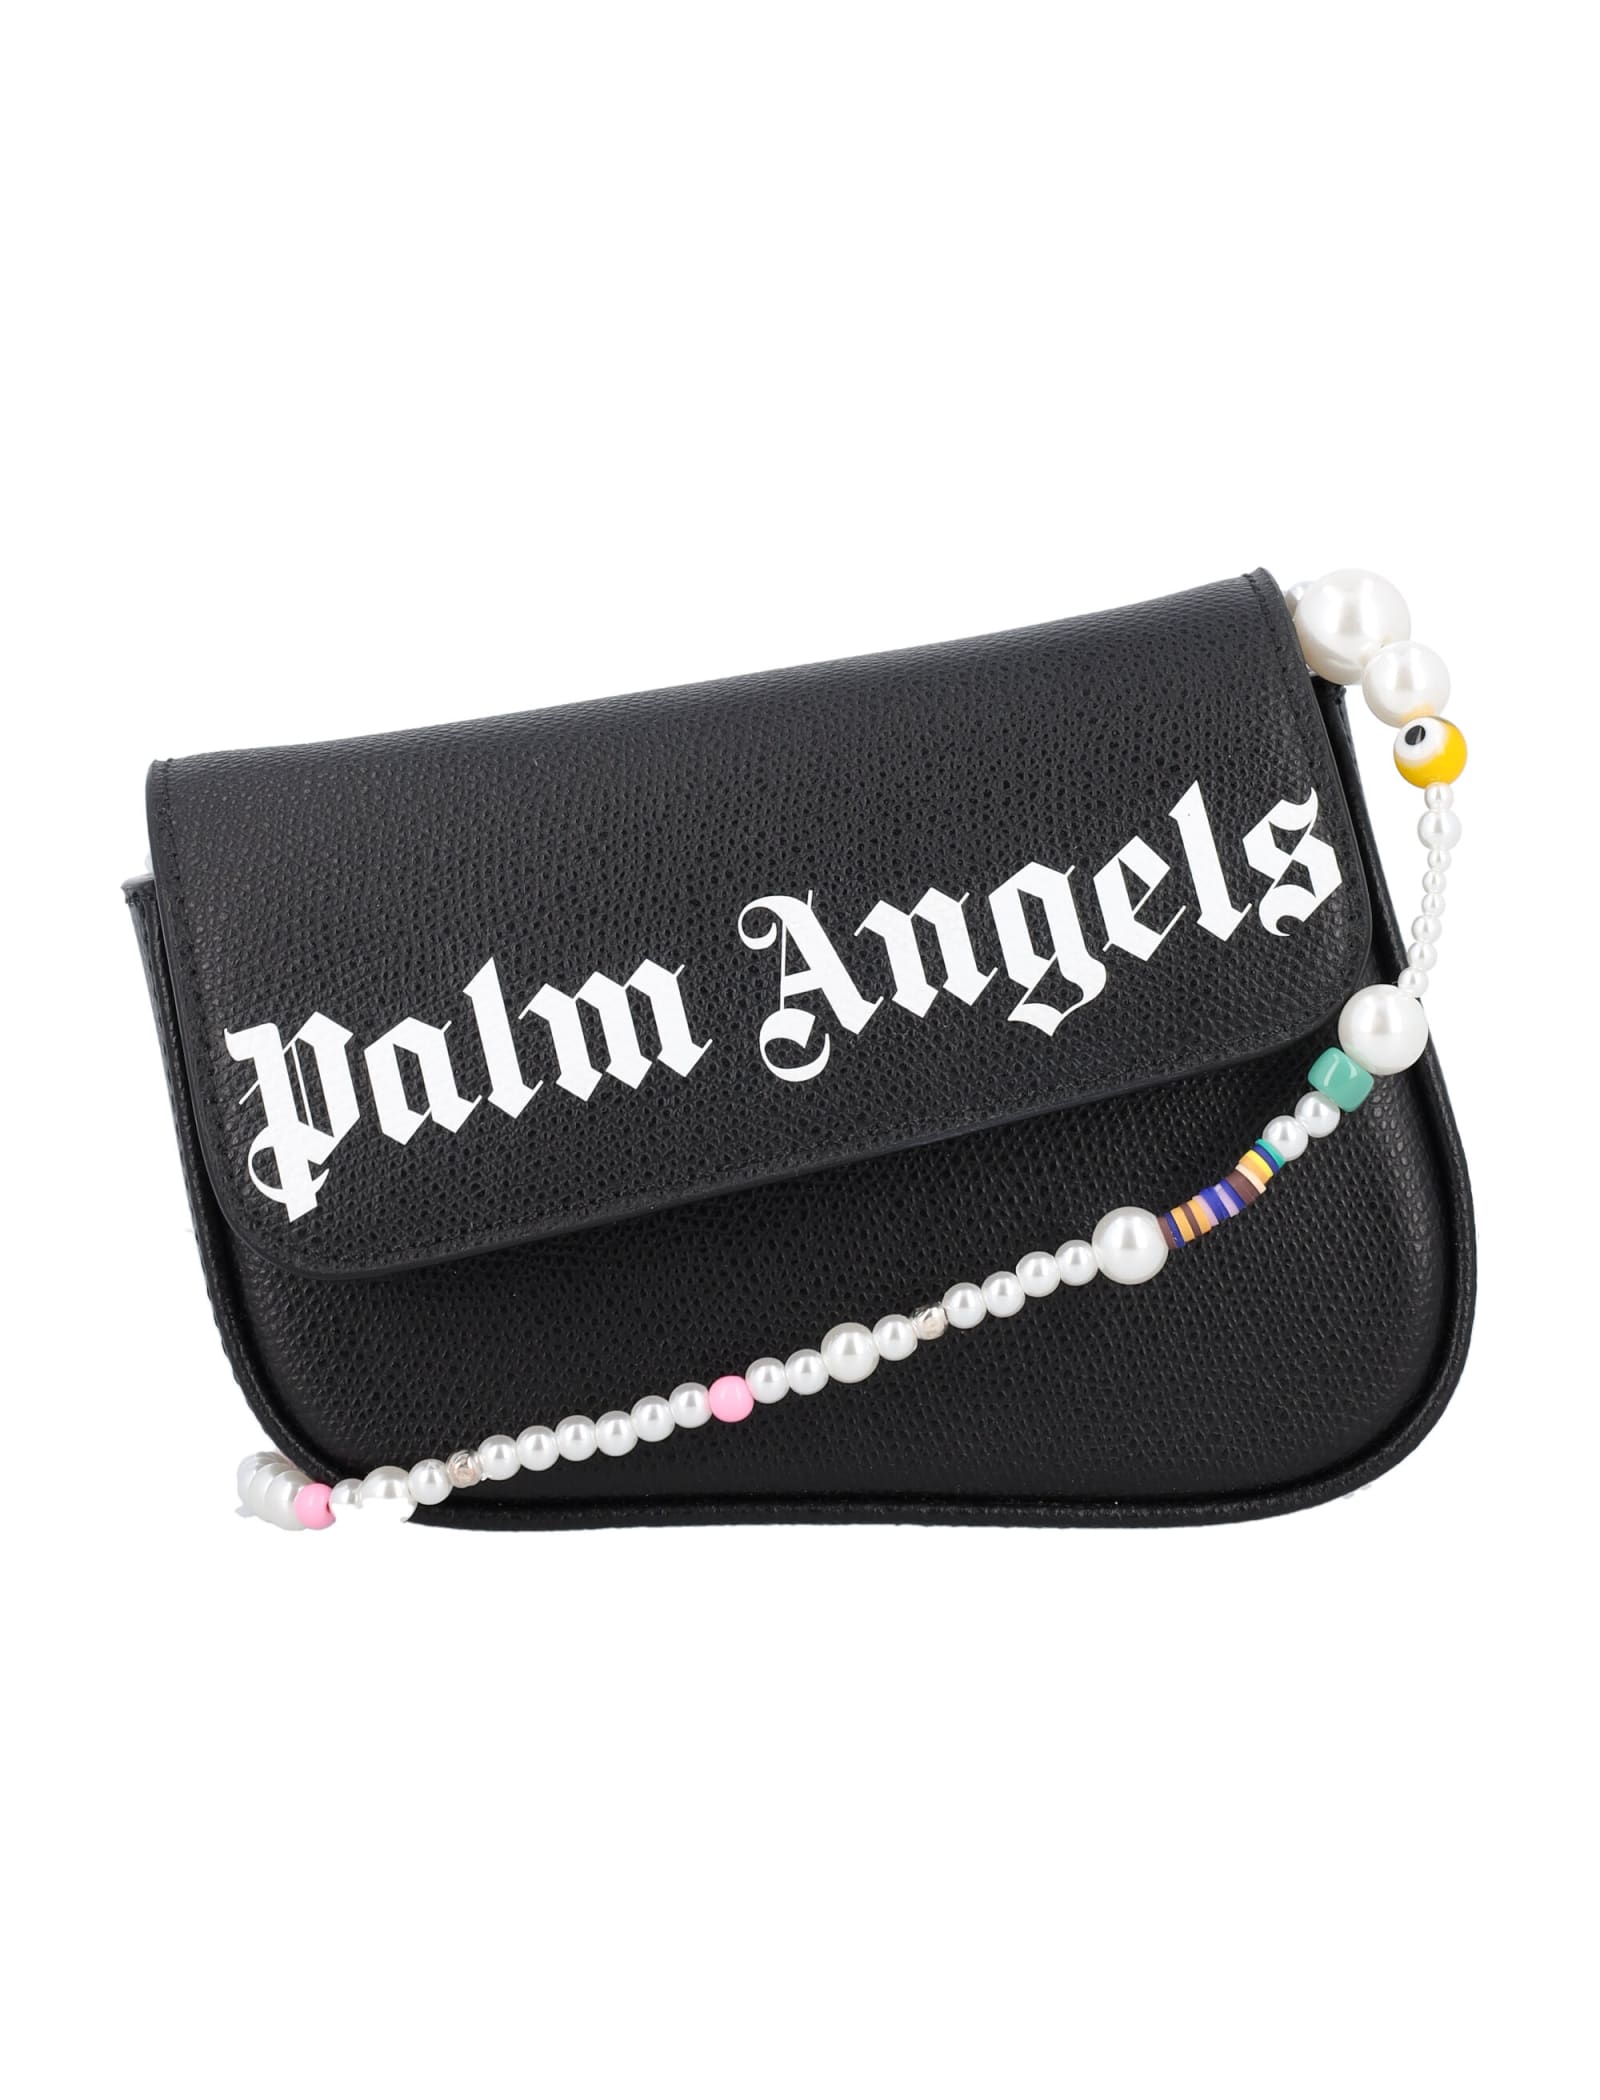 Palm Angels Crash Bag